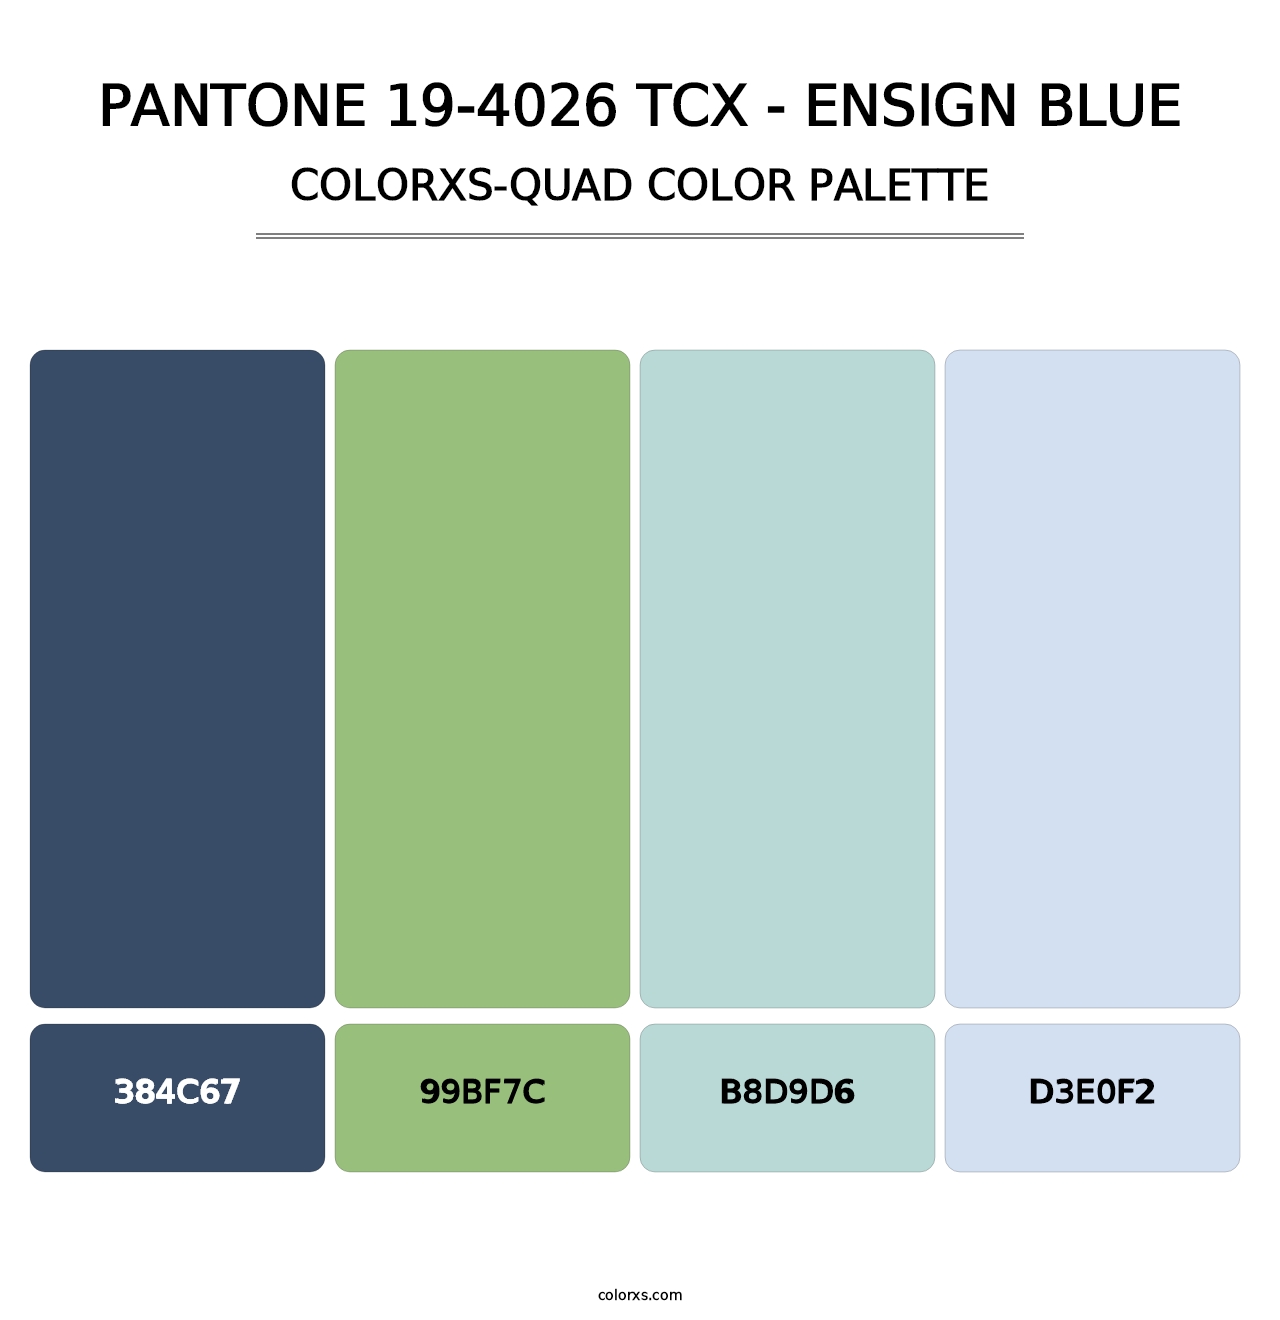 PANTONE 19-4026 TCX - Ensign Blue - Colorxs Quad Palette